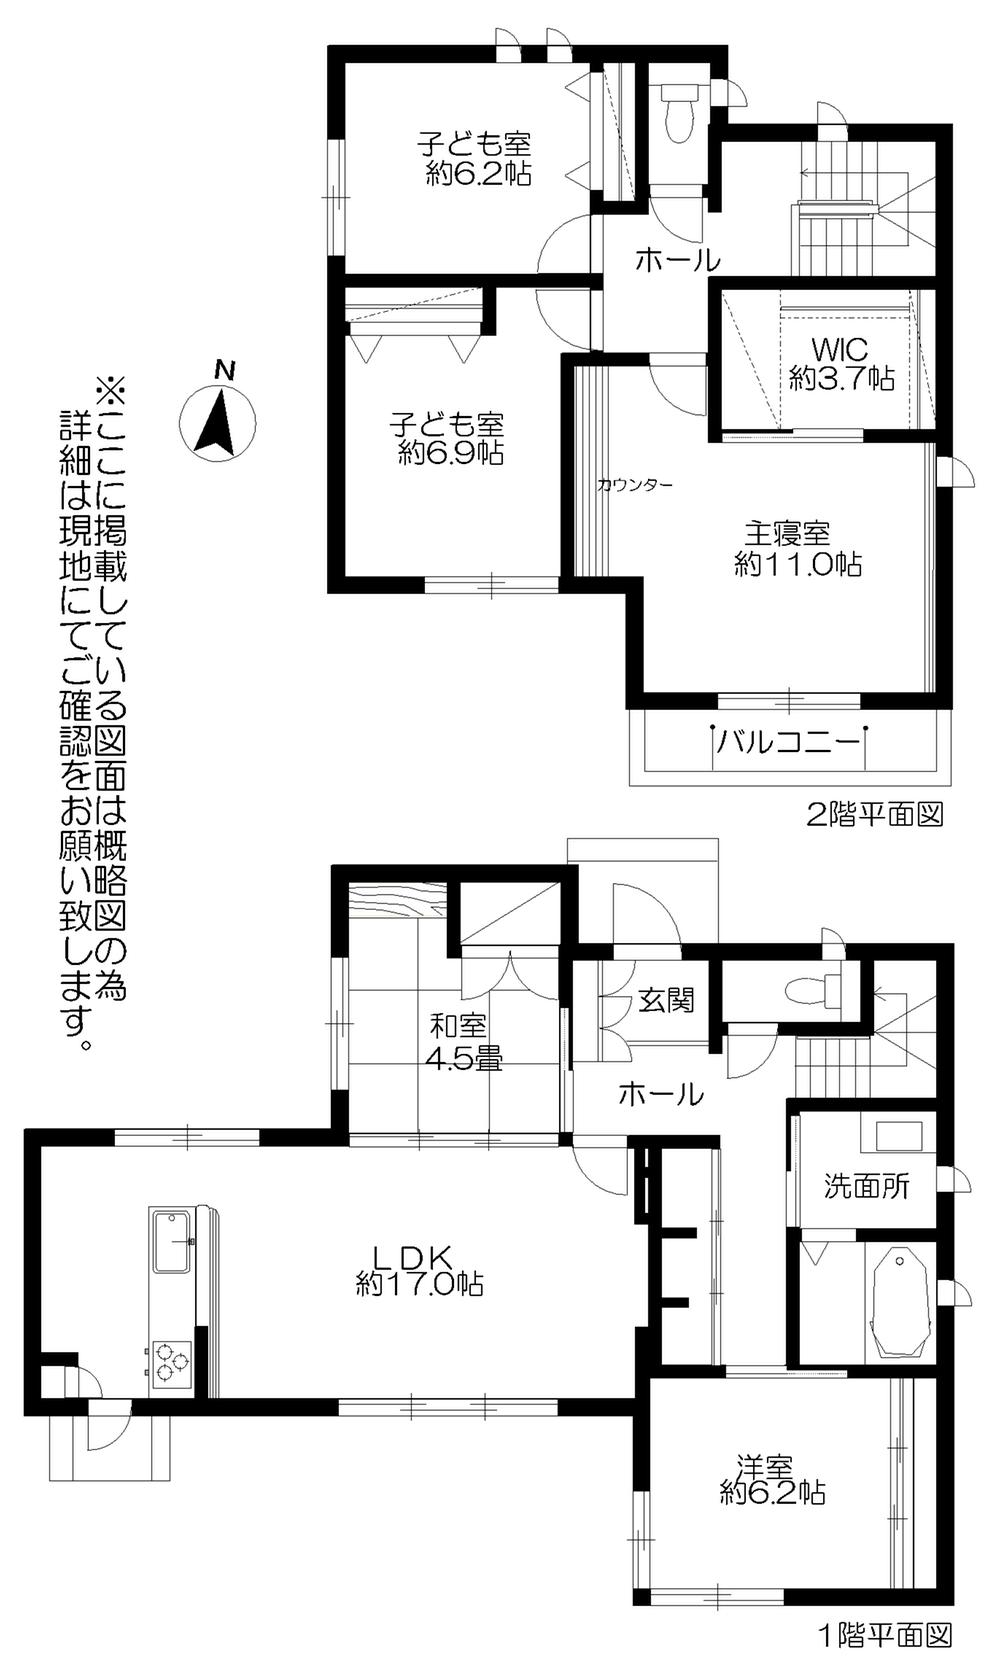 Floor plan. 27,900,000 yen, 5LDK + S (storeroom), Land area 213.78 sq m , Building area 136.28 sq m